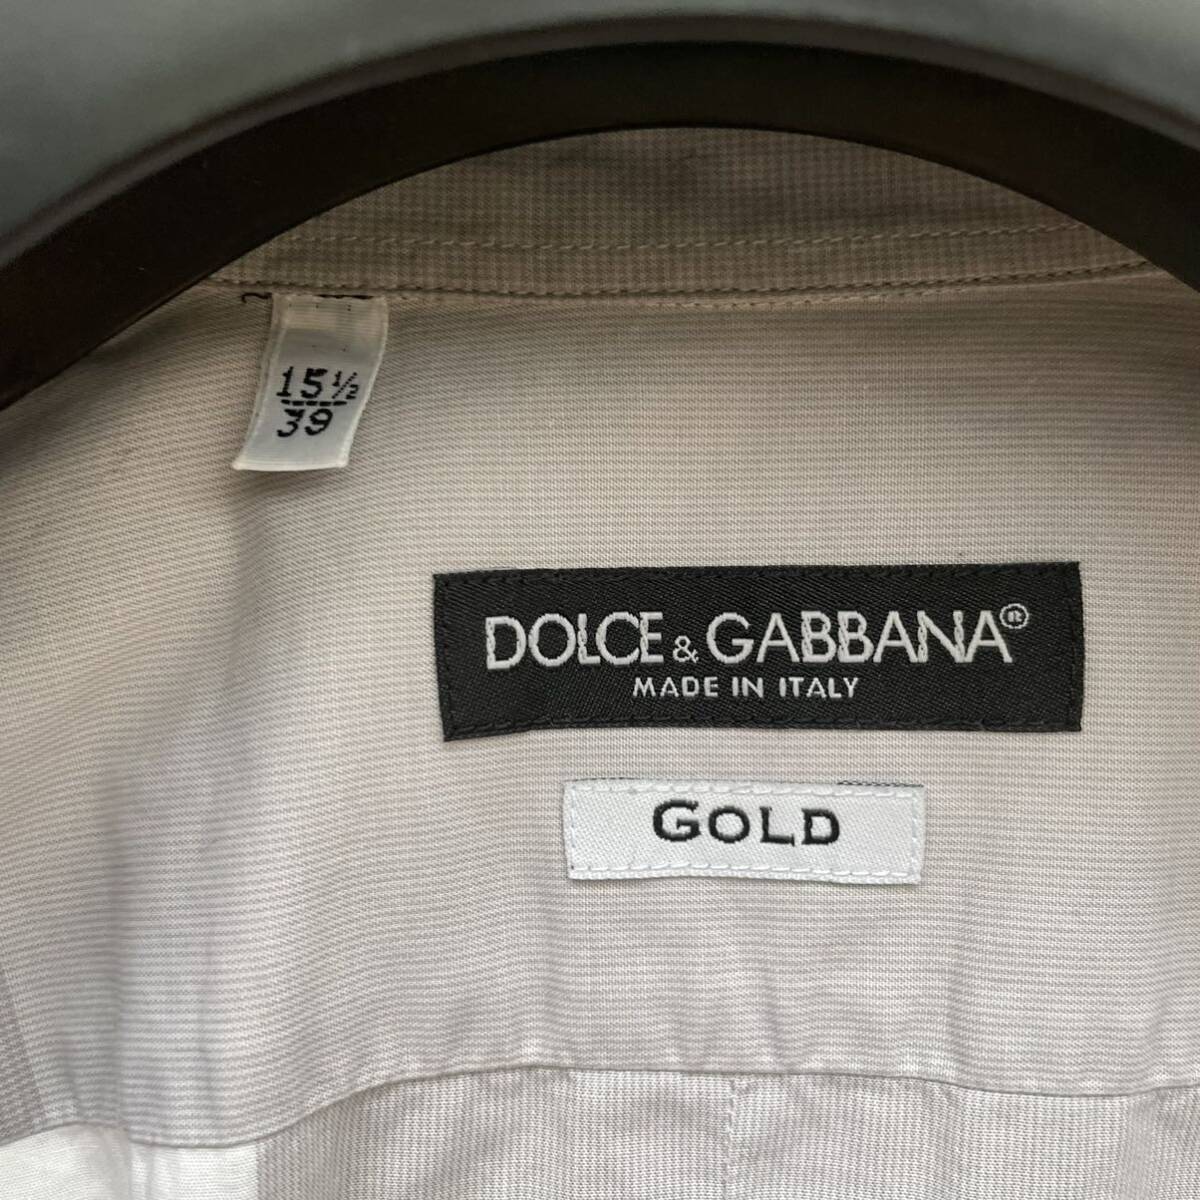 希少Lサイズ相当 ドルチェ&ガッバーナ【イタリア紳士の風格】DOLCE&GABBANA GOLD ドレスシャツ ボックスチェック柄 グレー系 長袖 39サイズ_画像8